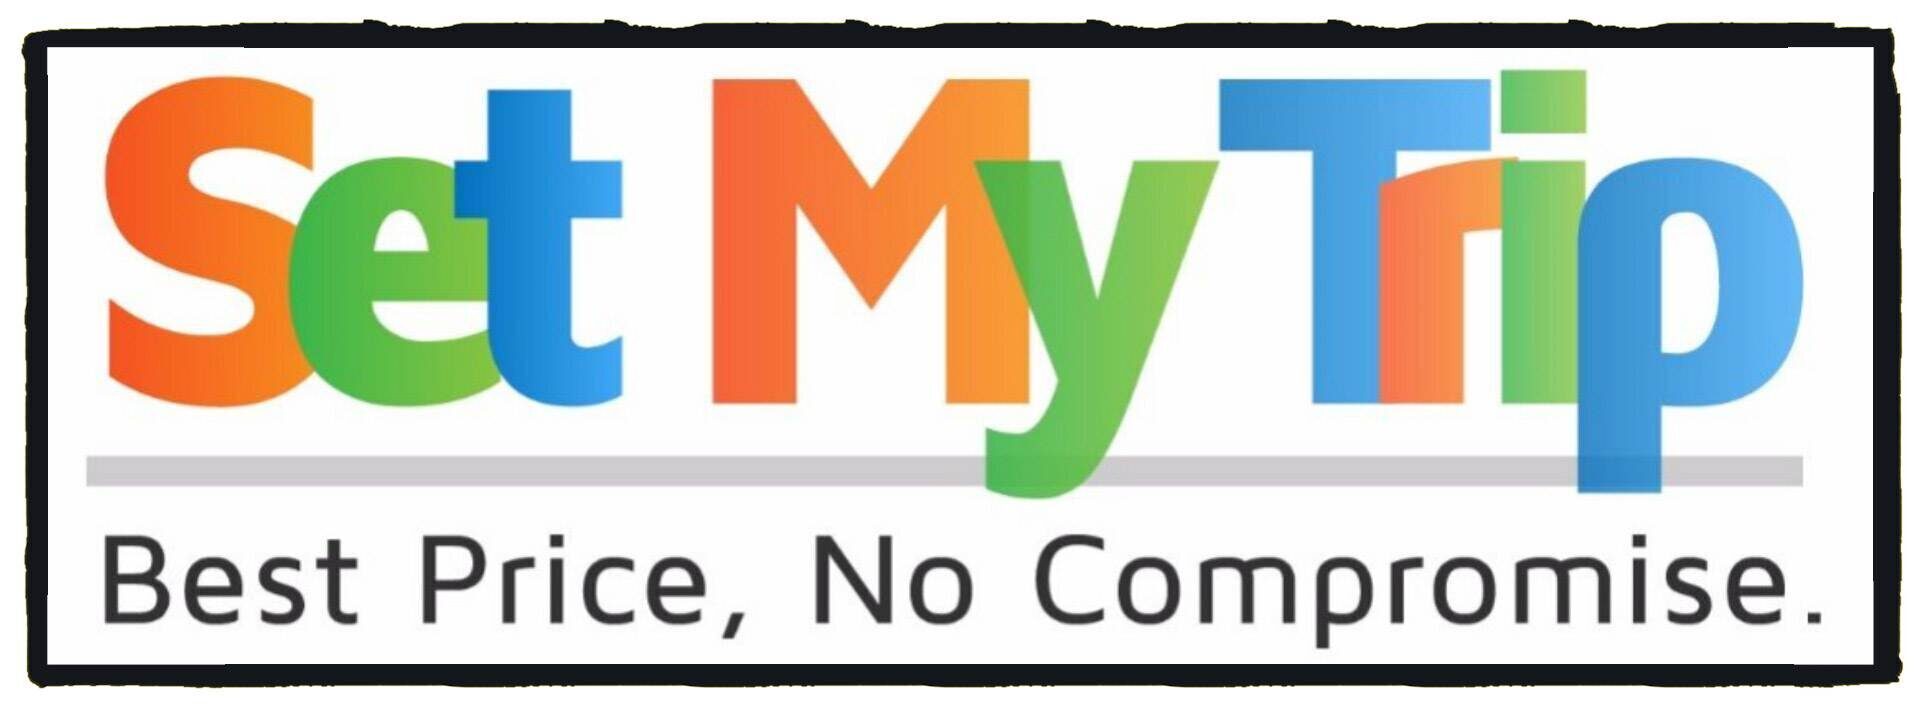 SetMyTrip Logo